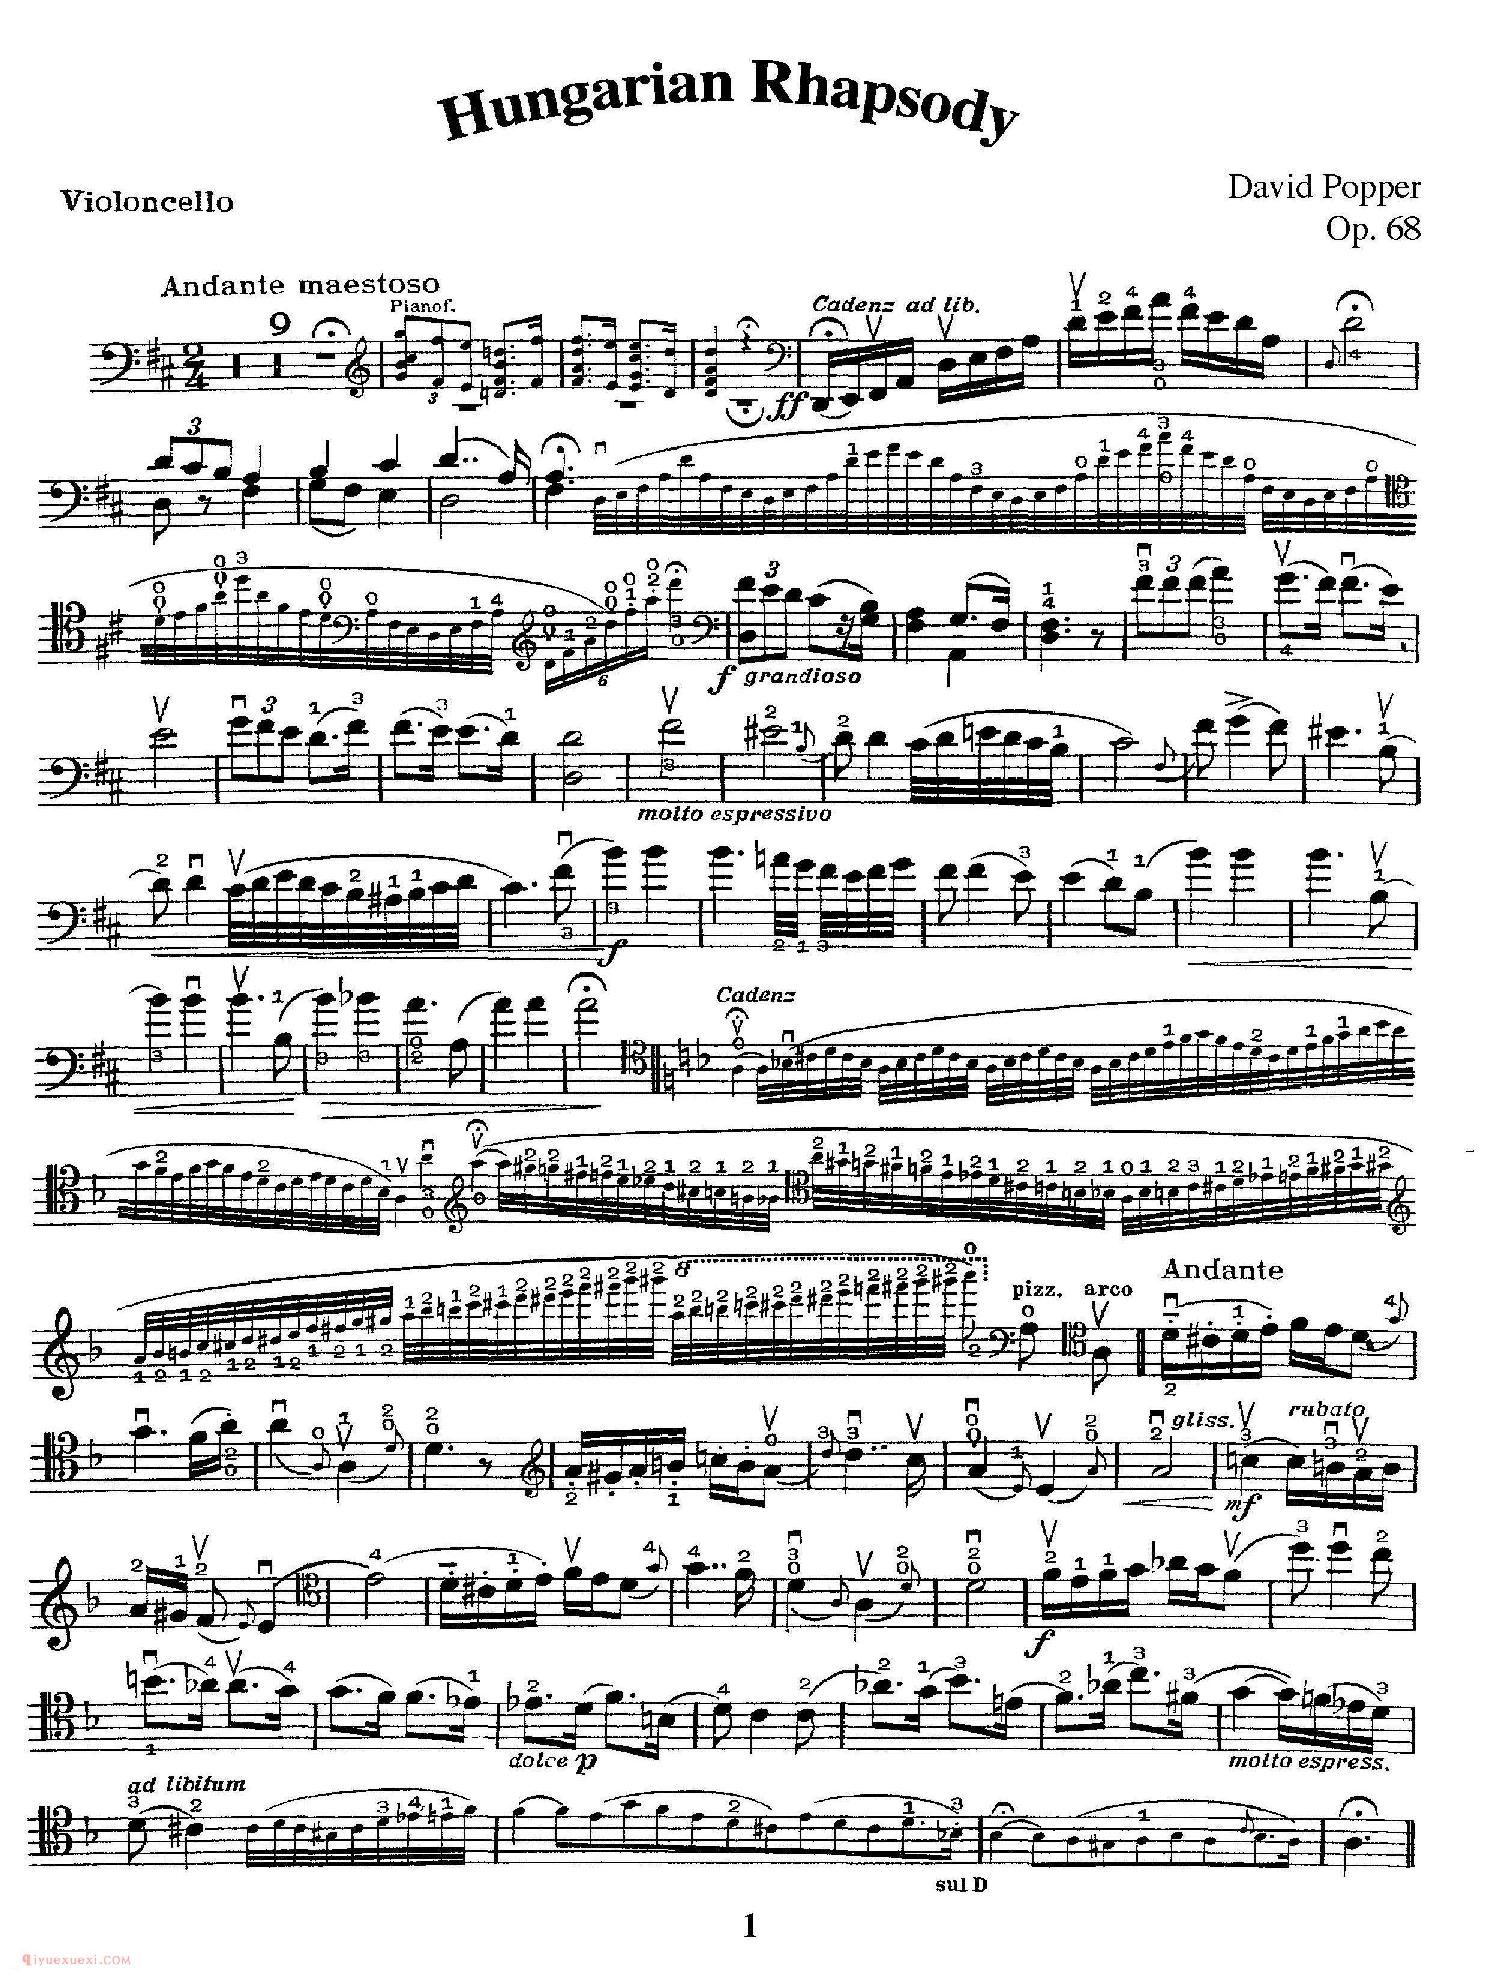 大提琴乐谱《匈牙利狂想曲/Hungarian Rhapsody》大卫·波帕尔